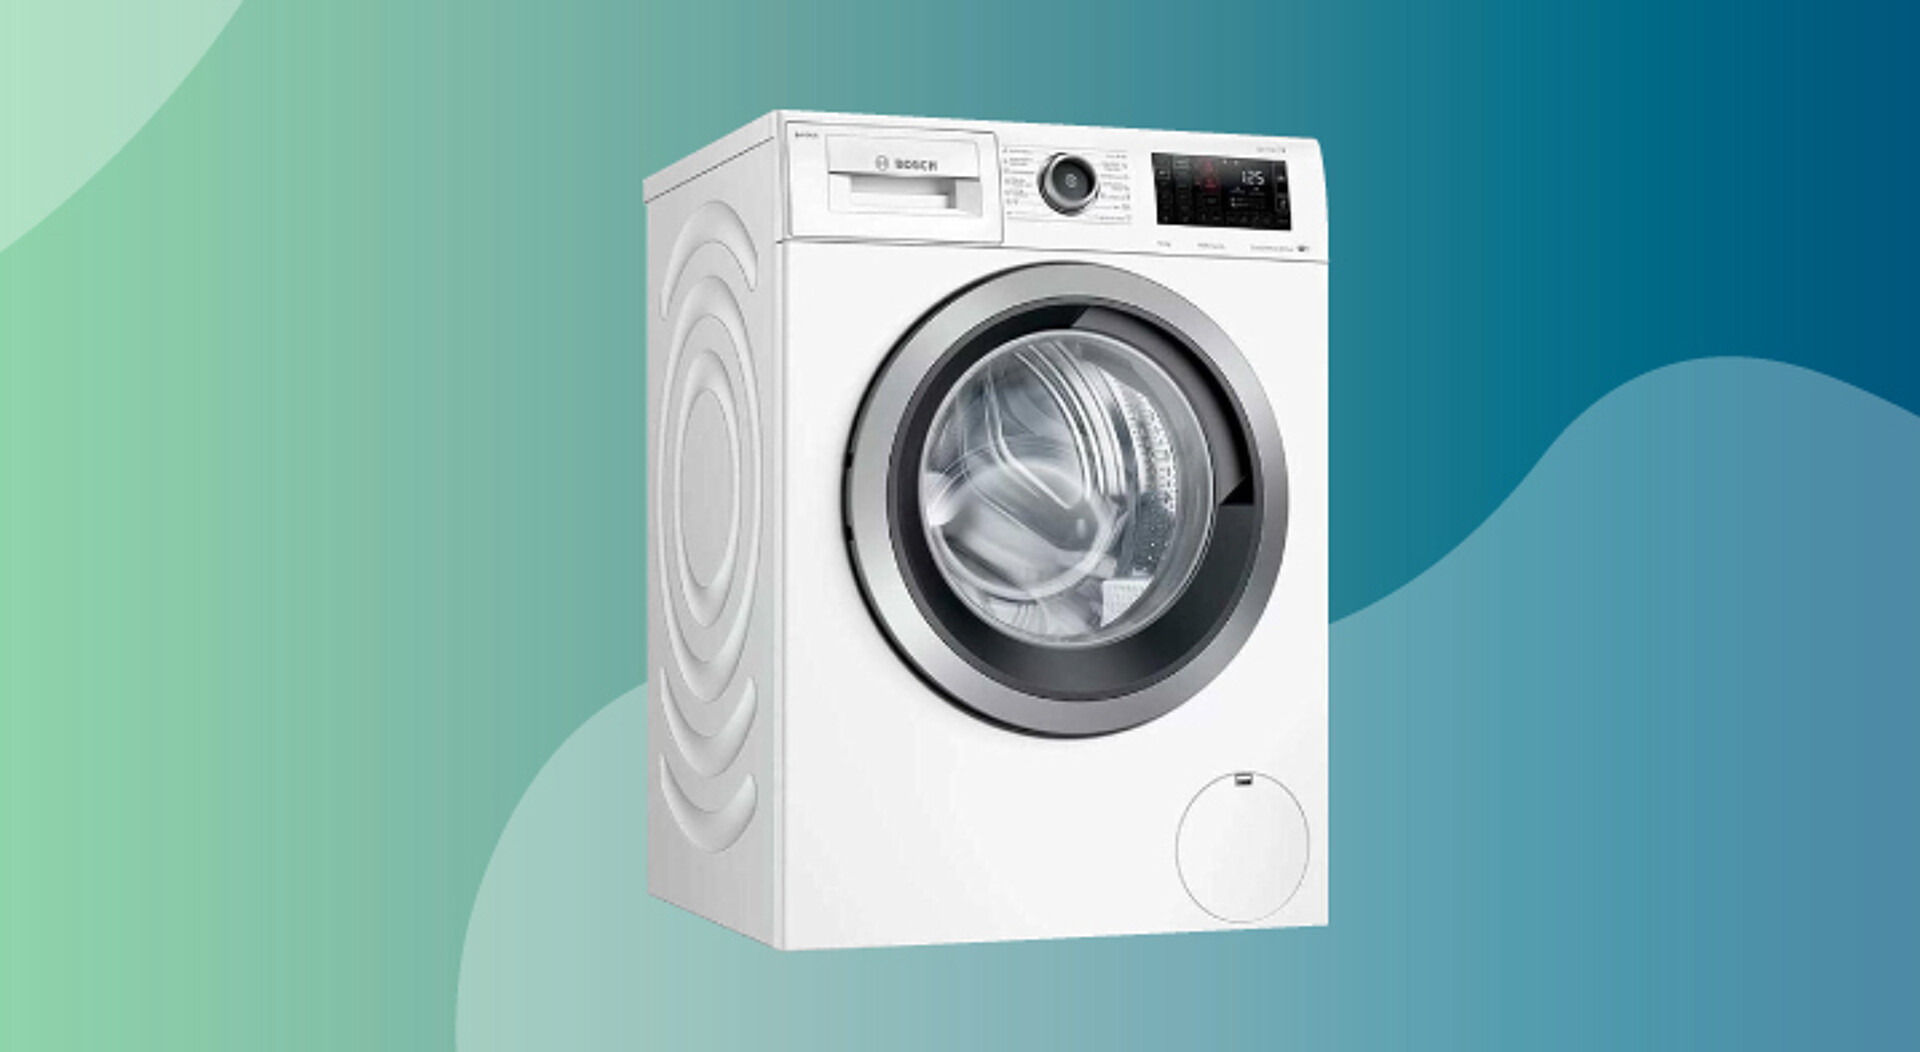 Das lichtundurchlässige ABS kommt für Bedienfelder von Waschmaschinen zum Einsatz. (Foto: Elix)